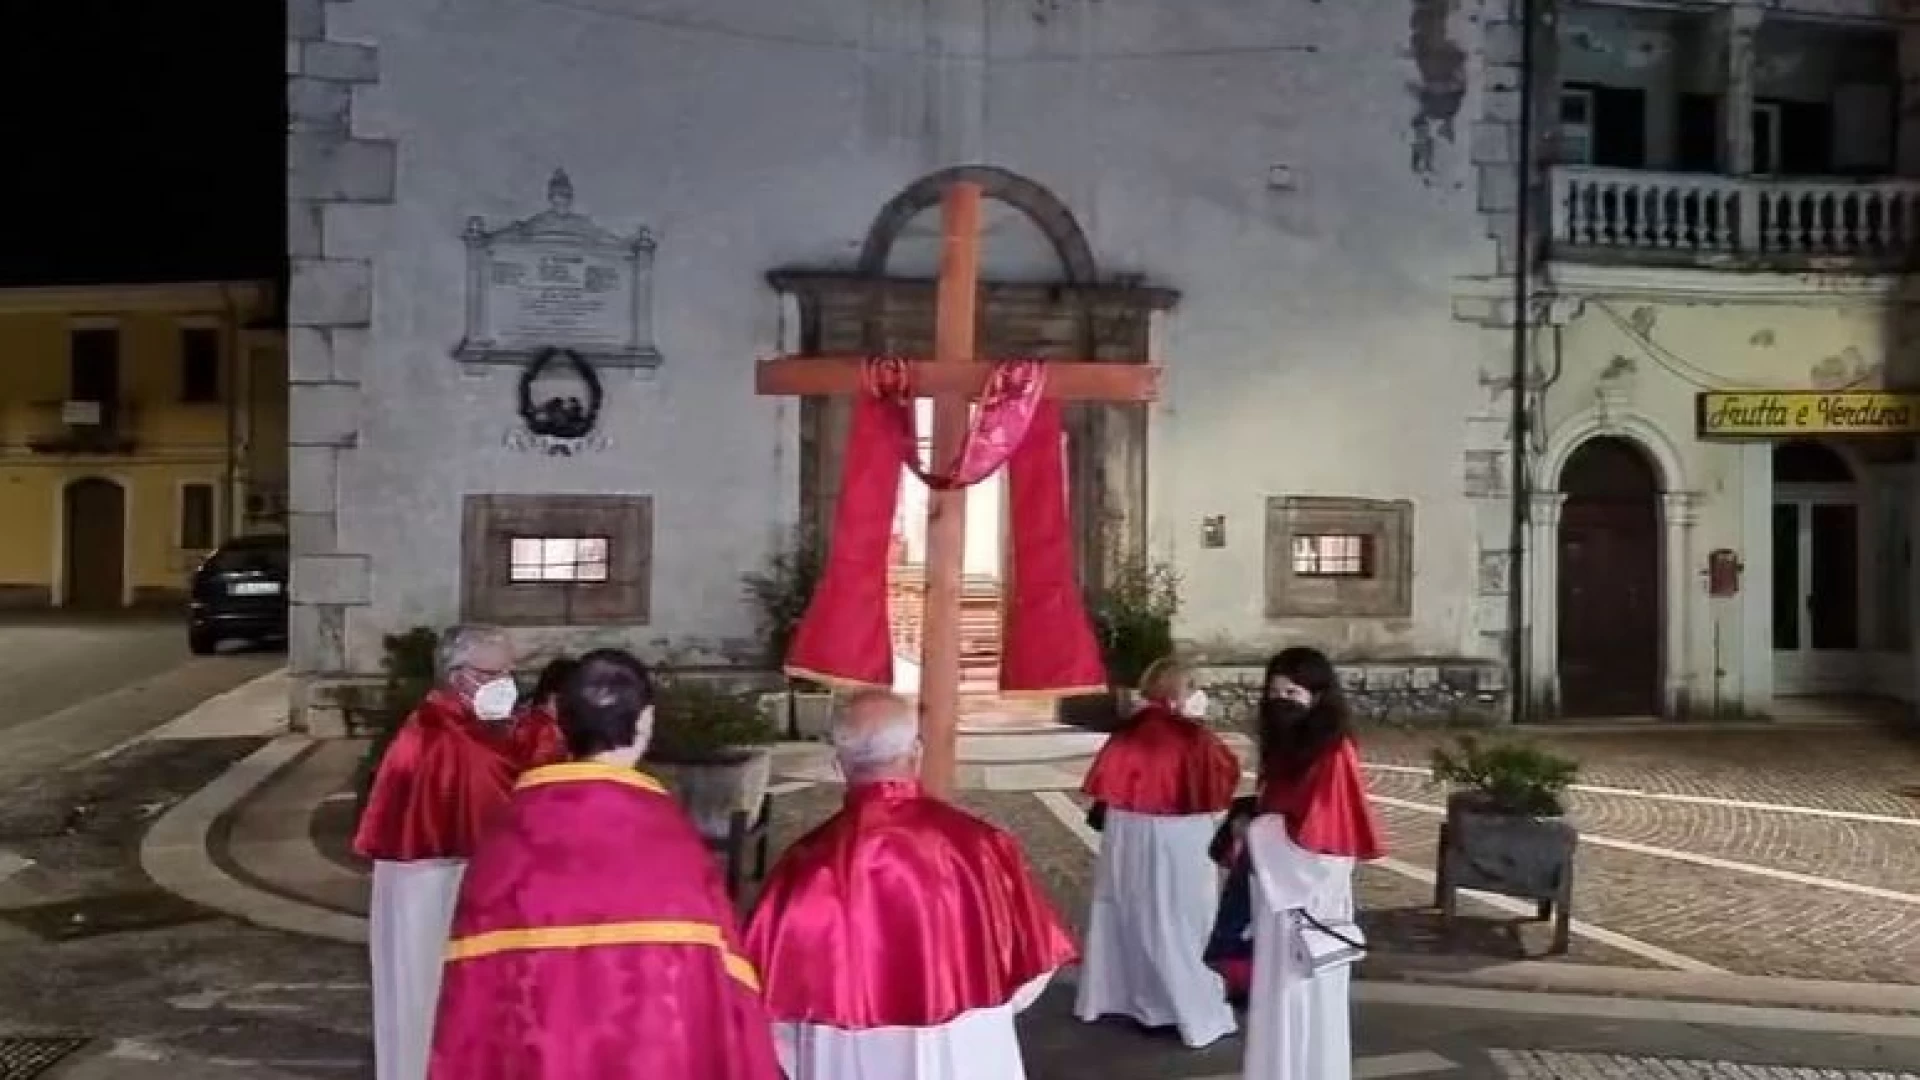 Colli a Volturno: un venerdì santo particolare. Via Crucis in paese con il parroco in solitaria e alcuni volontari. Immagini emozionanti. Guarda il video.